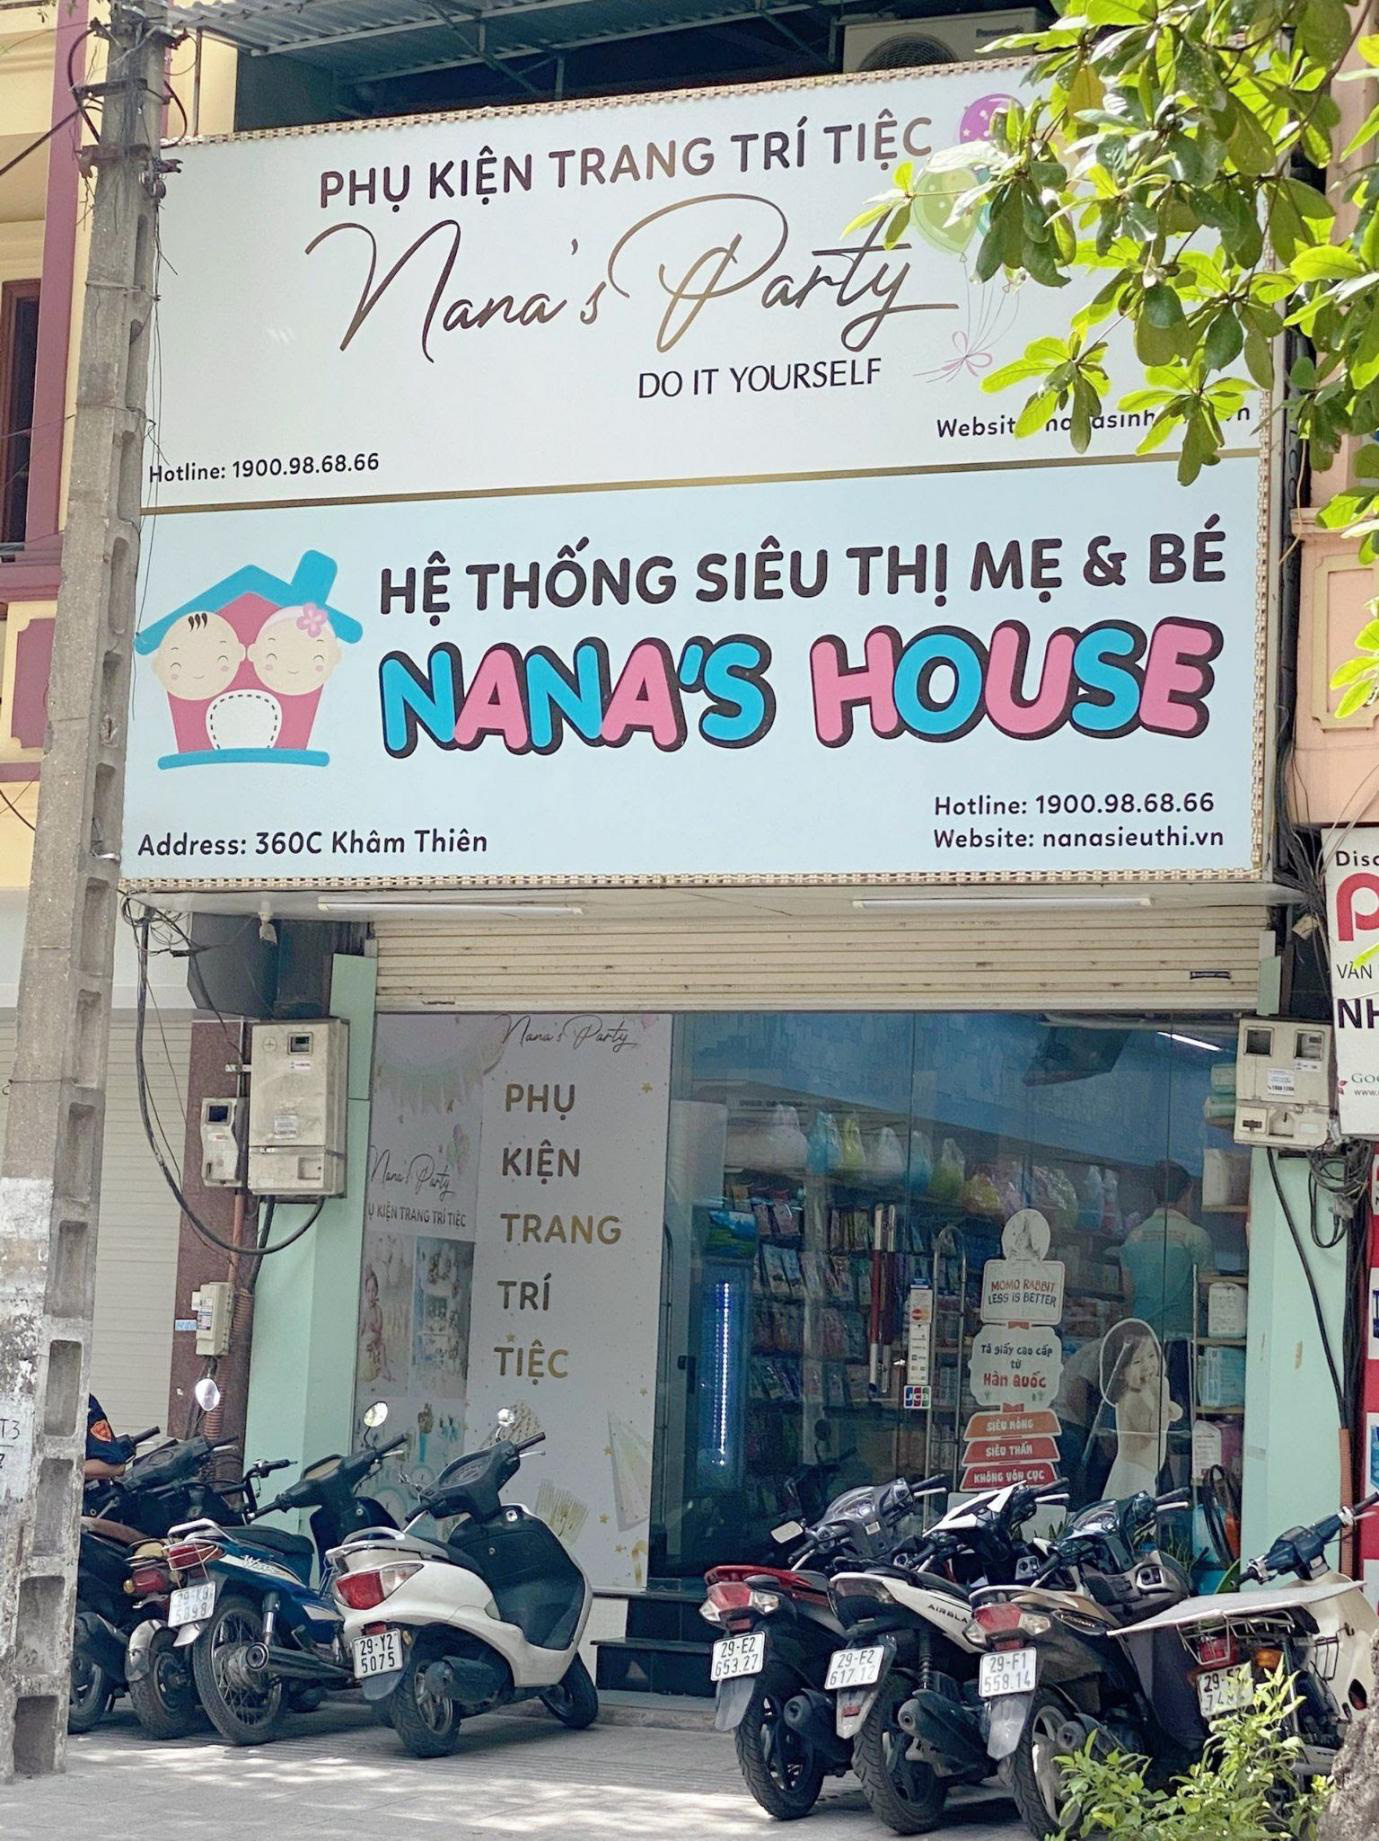 Chia sẻ của founder hệ thống siêu thị Nana’s house sau gần 10 năm kinh doanh ngành hàng mẹ và bé - Ảnh 4.